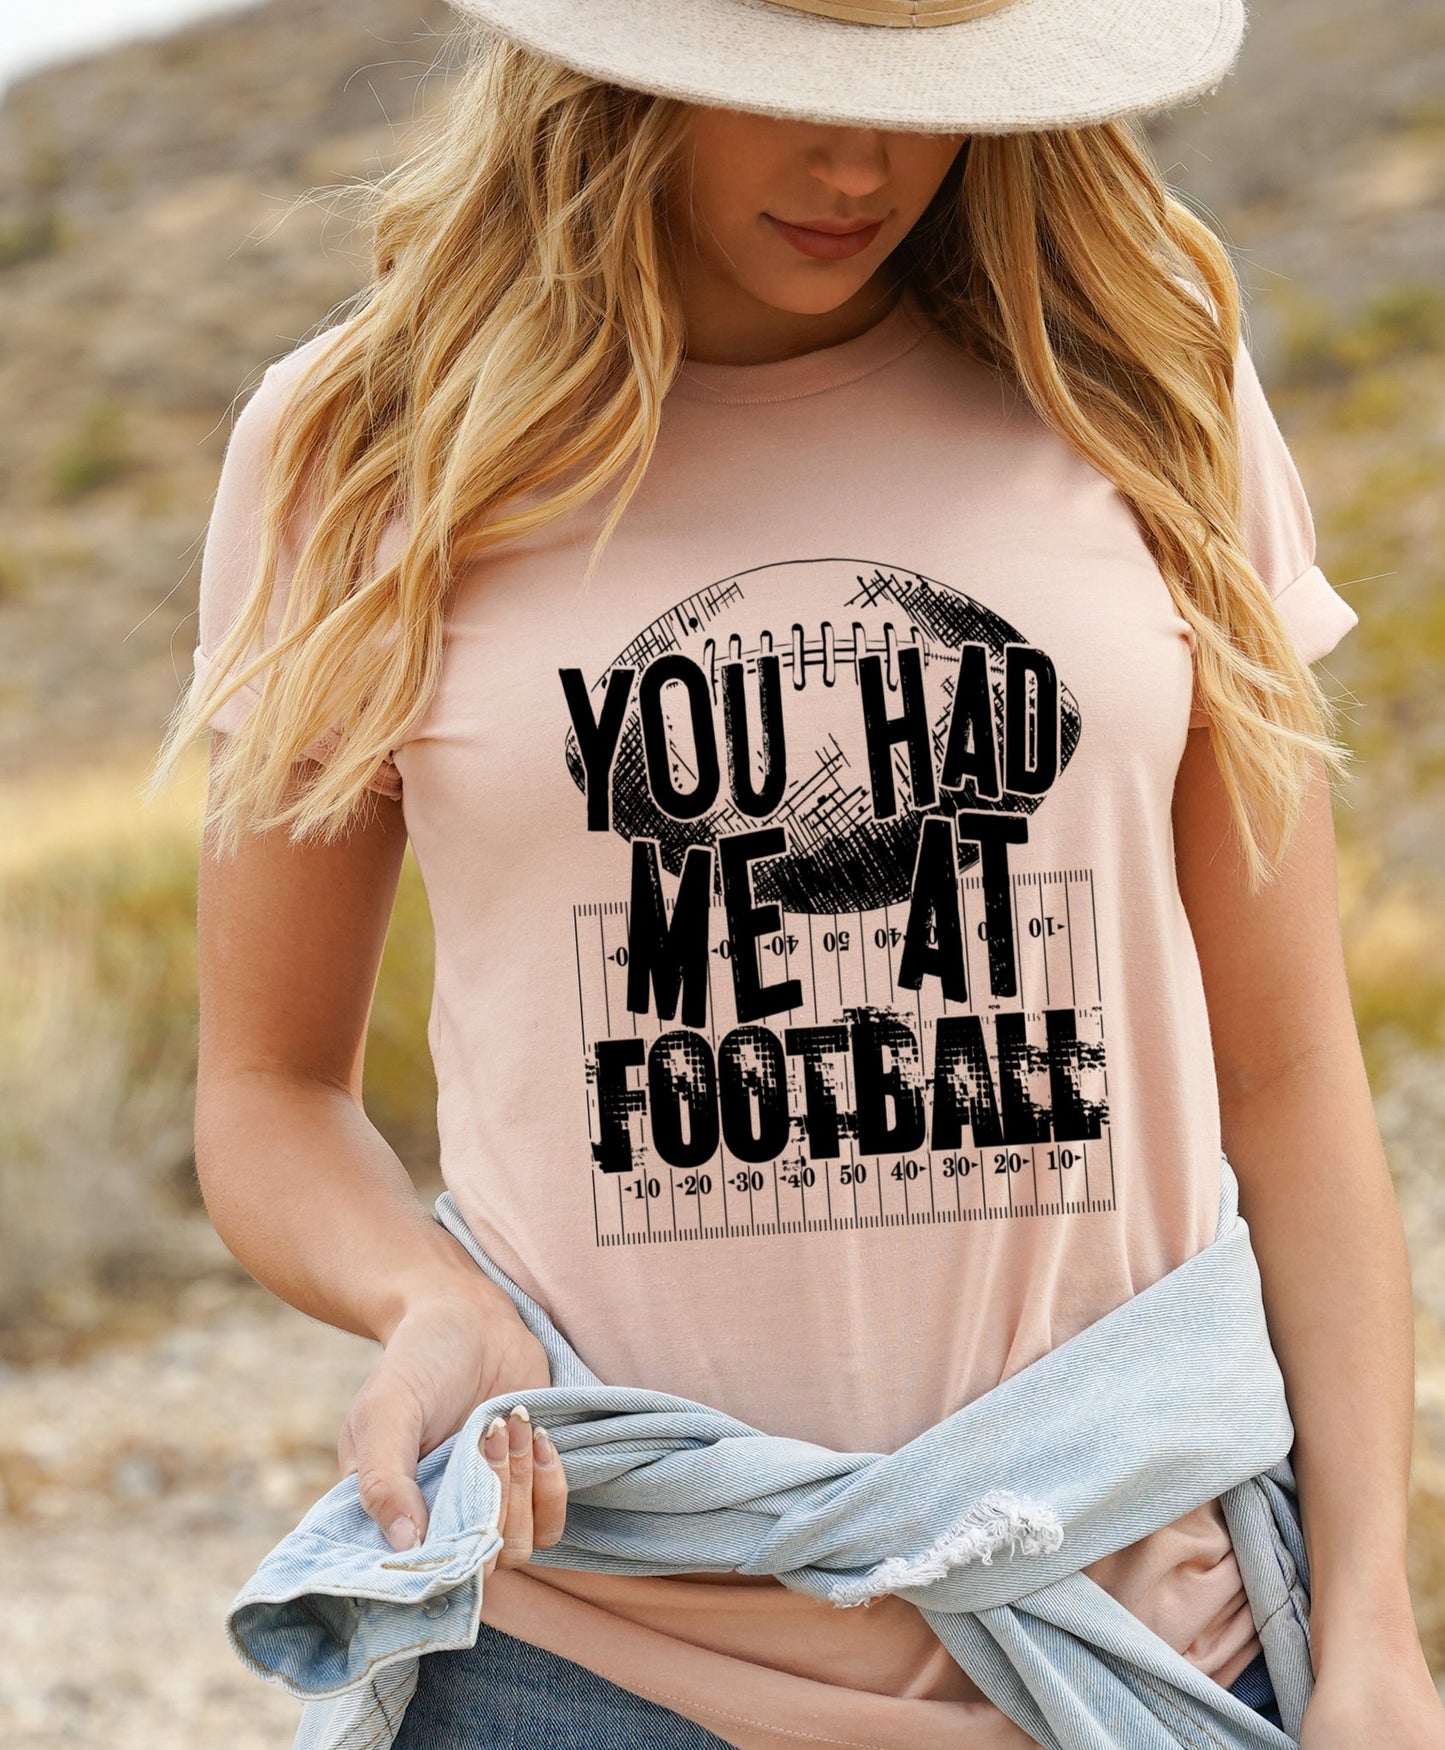 You had me at football